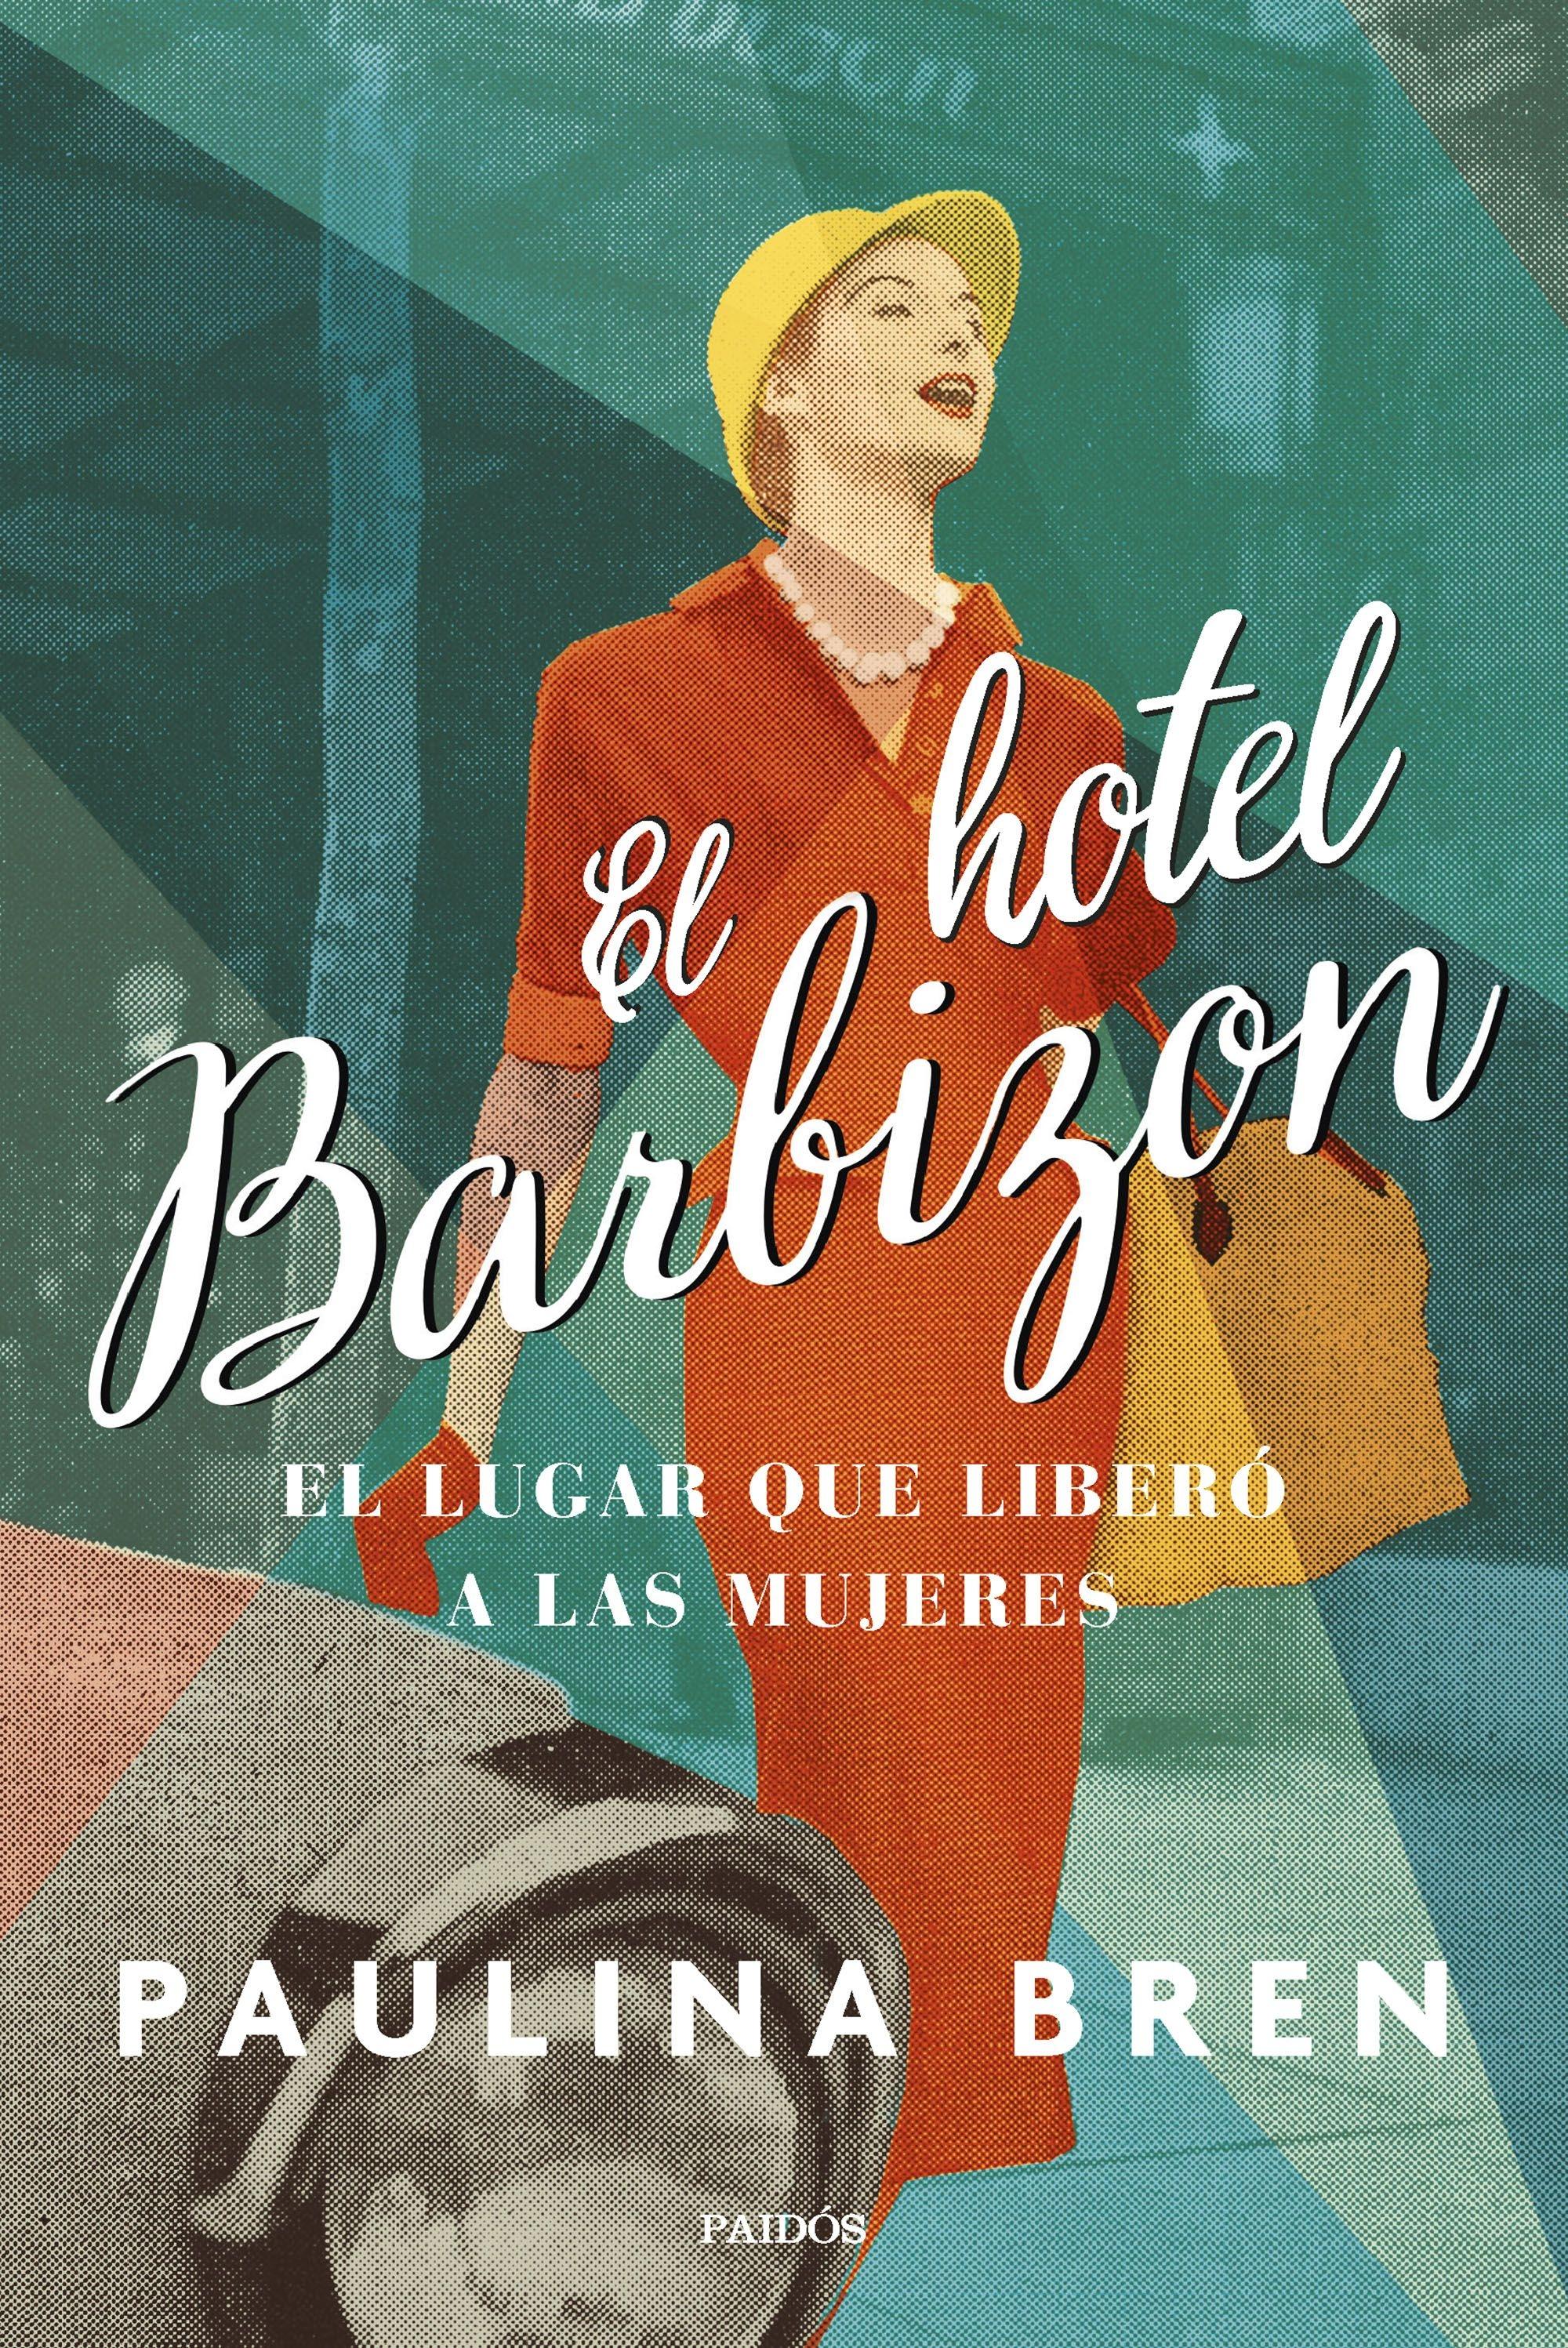 El Hotel Barbizon "El Lugar que Liberó a las Mujeres". 